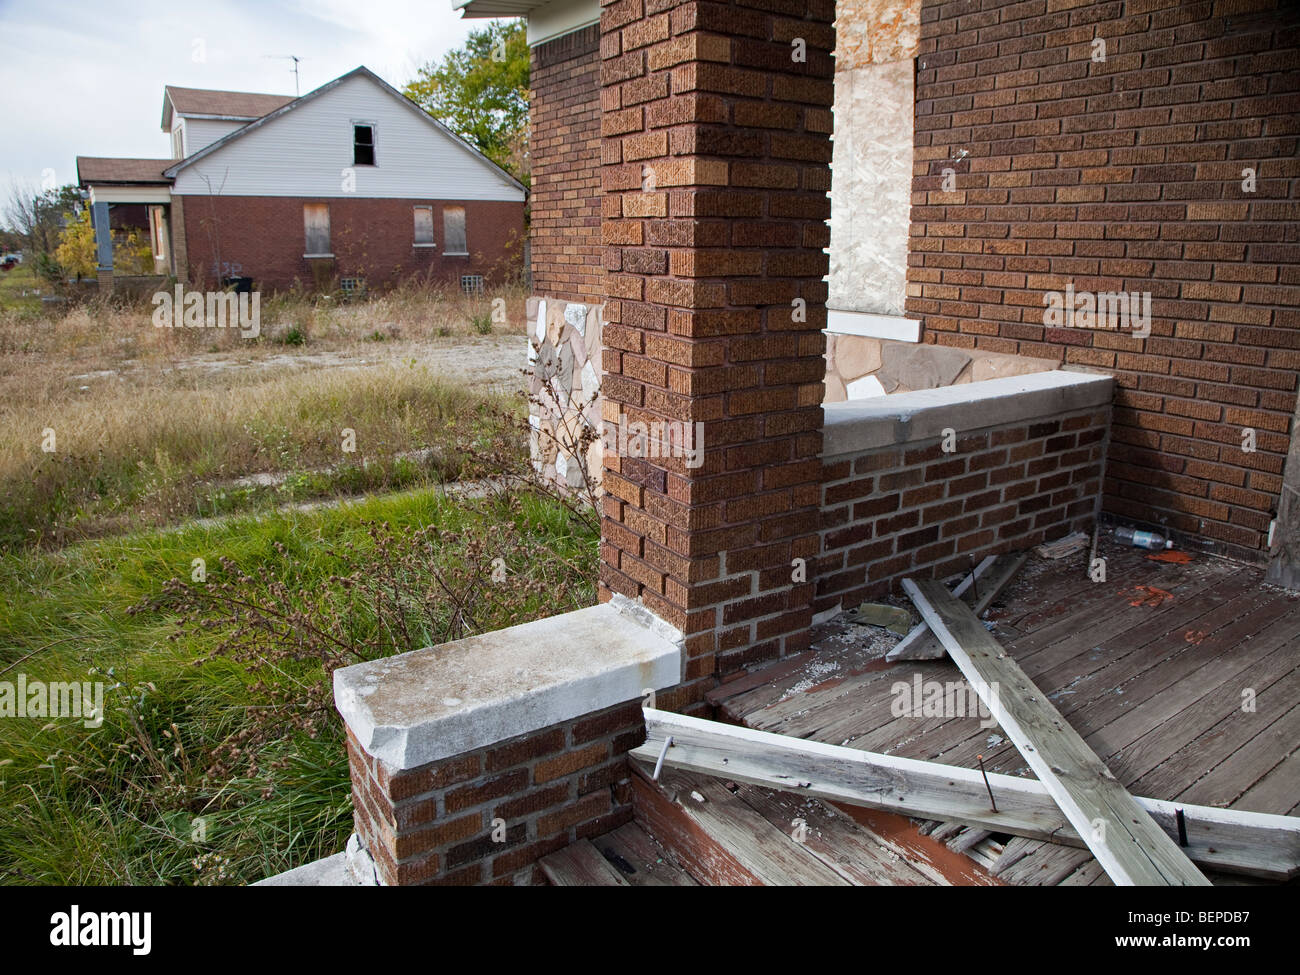 Detroit, Michigan - Terrains vacants et maisons abandonnées sur le côté est de la ville. Banque D'Images